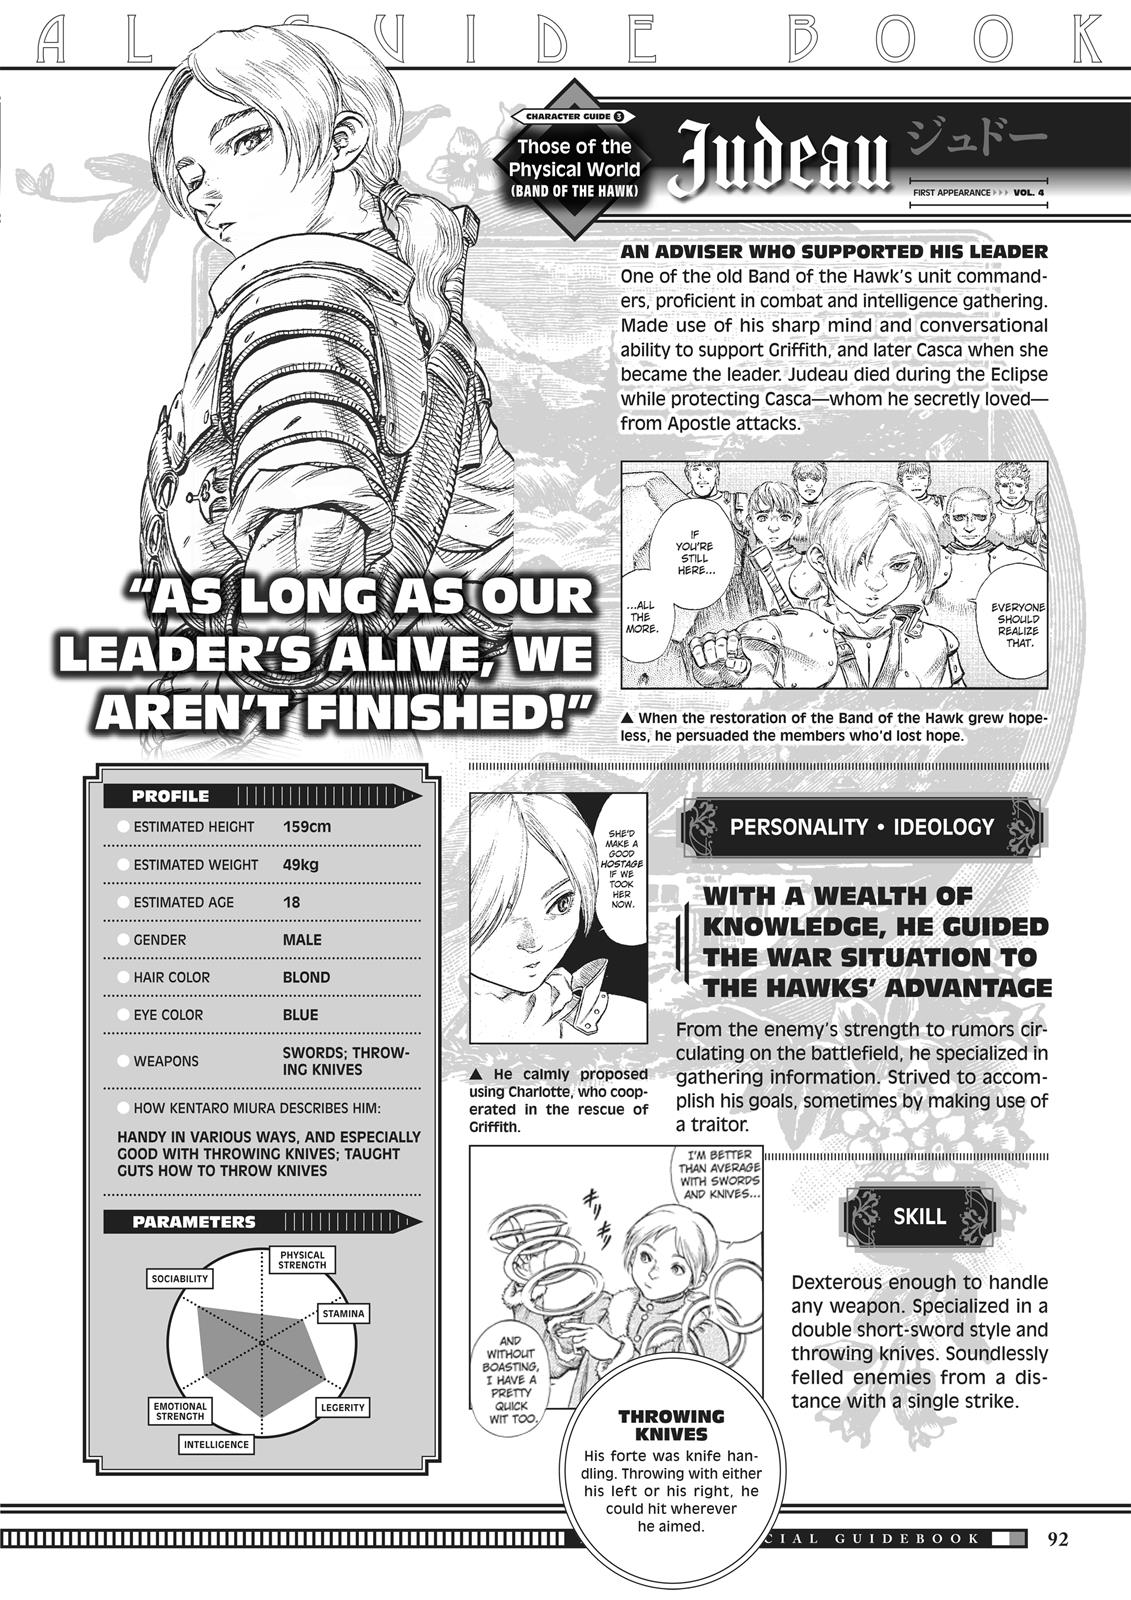 Berserk Manga Chapter 350.5 image 090